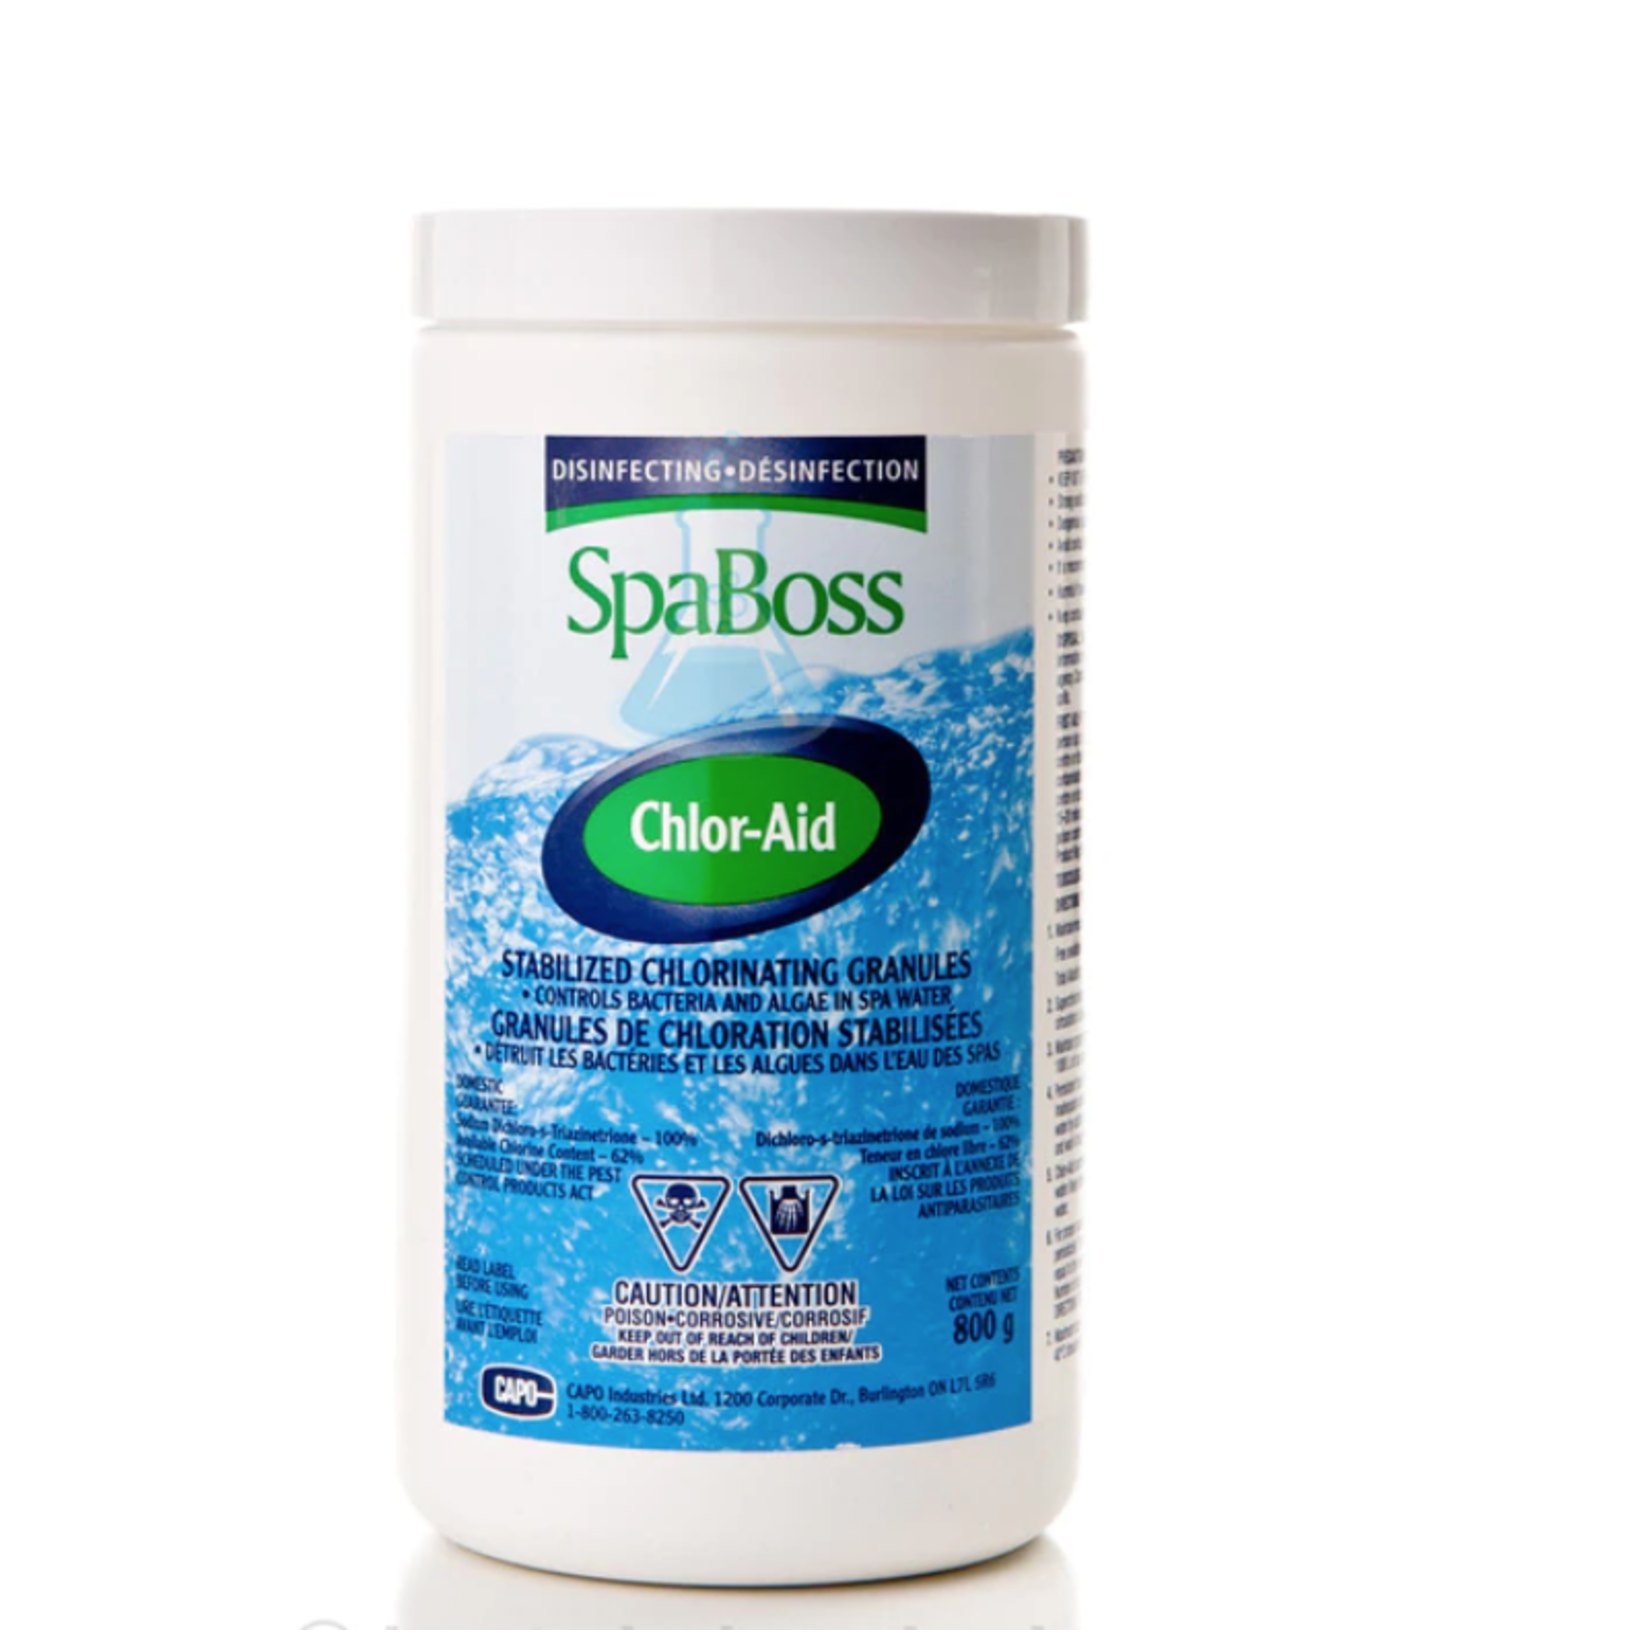 SpaBoss SpaBoss Chlor-Aid 800g (Stabilized Chlorinating Granules)